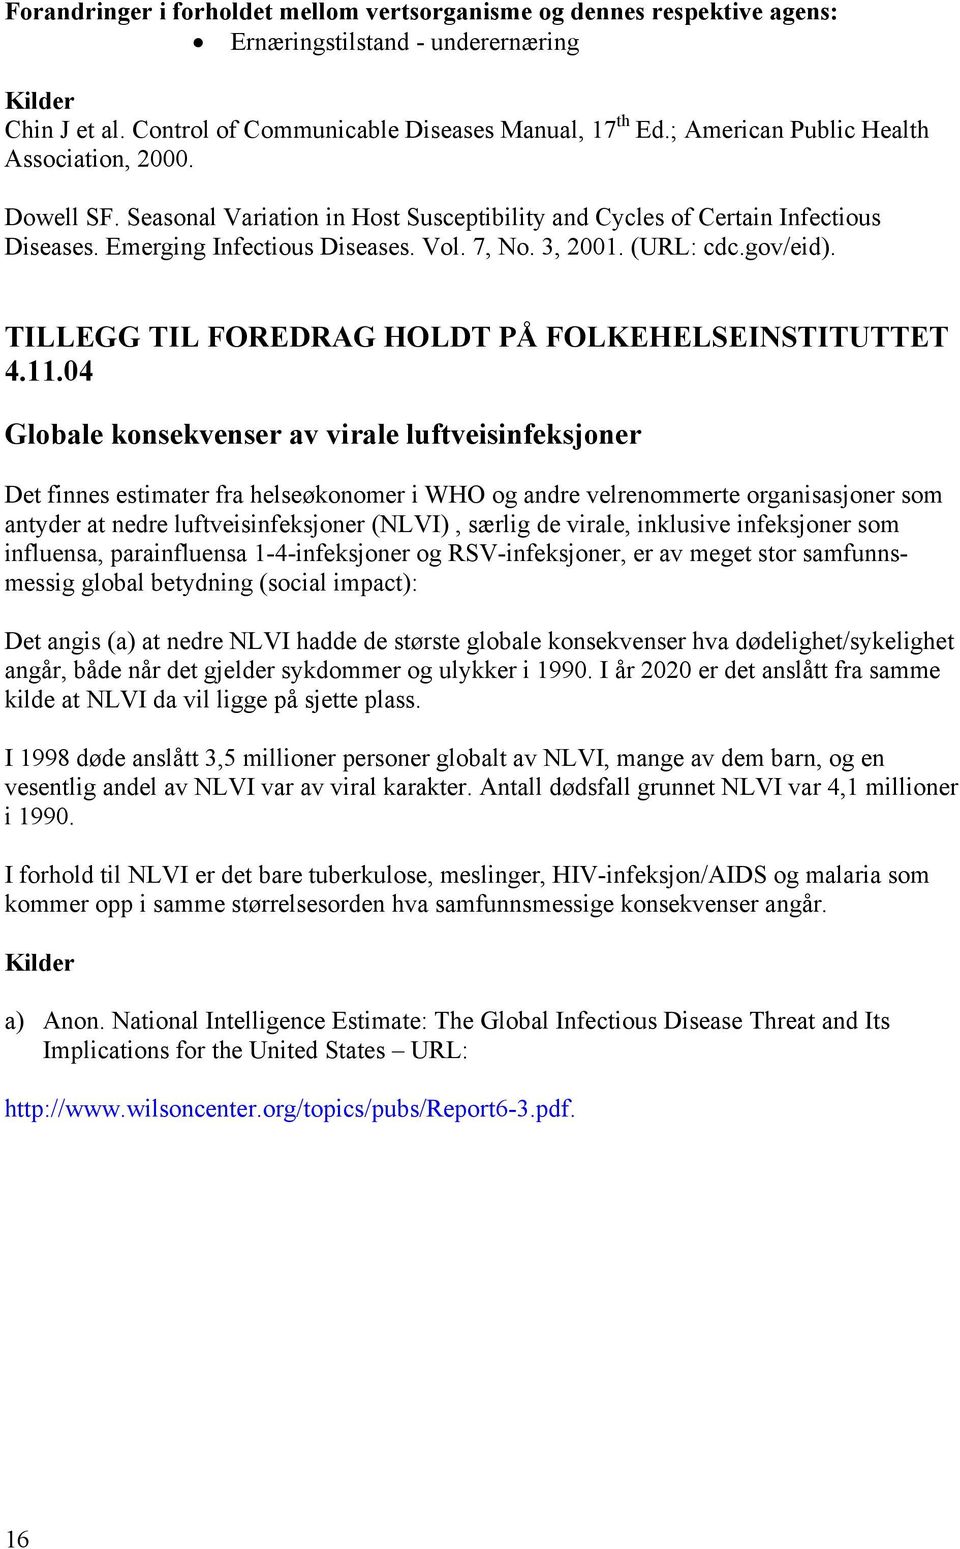 (URL: cdc.gov/eid). TILLEGG TIL FOREDRAG HOLDT PÅ FOLKEHELSEINSTITUTTET 4.11.